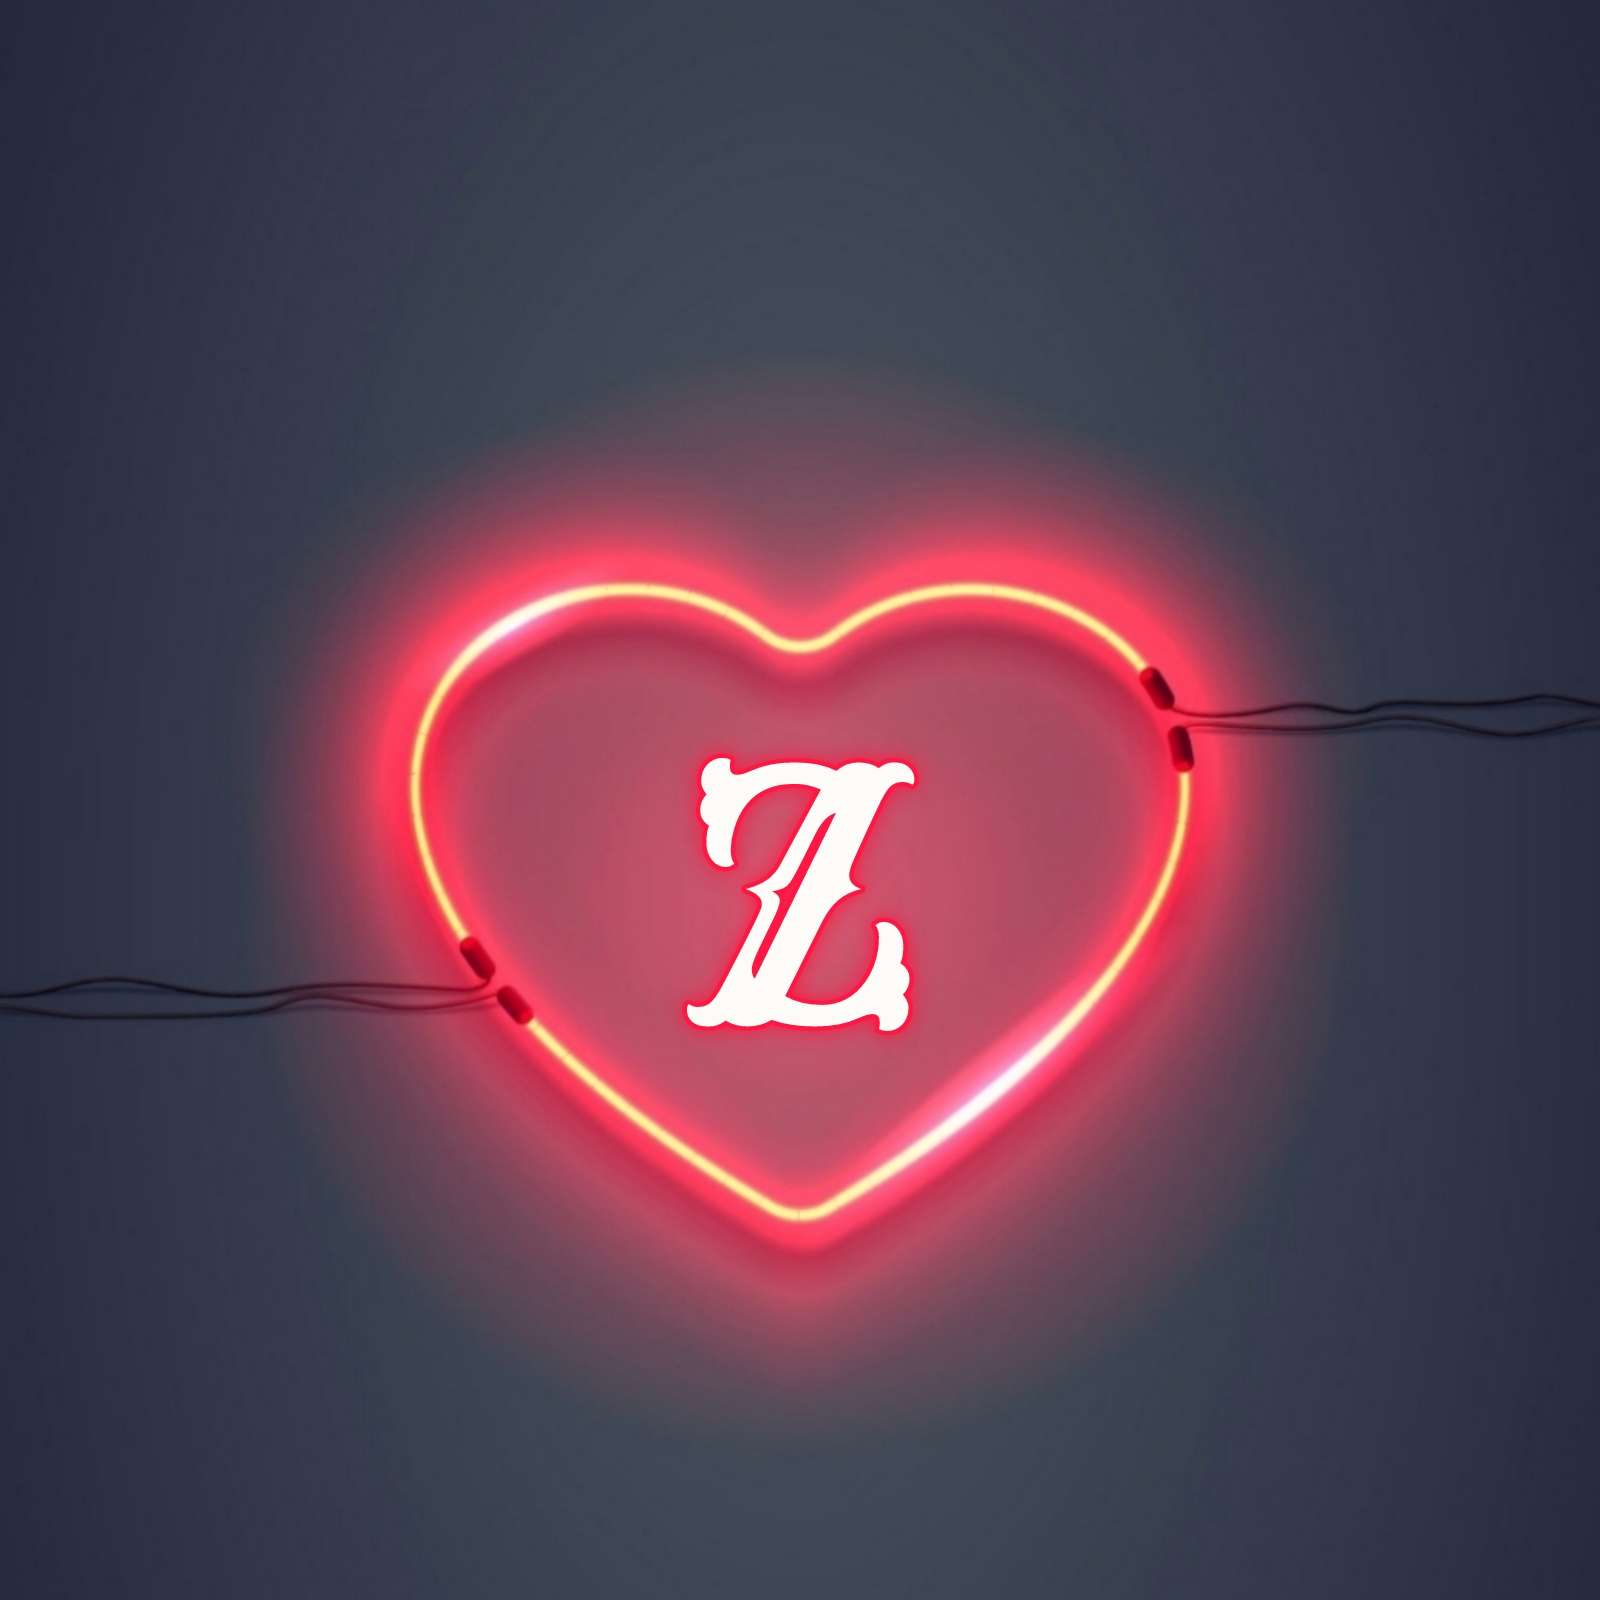 Z Name Love DP Image Download - ShayariMaza